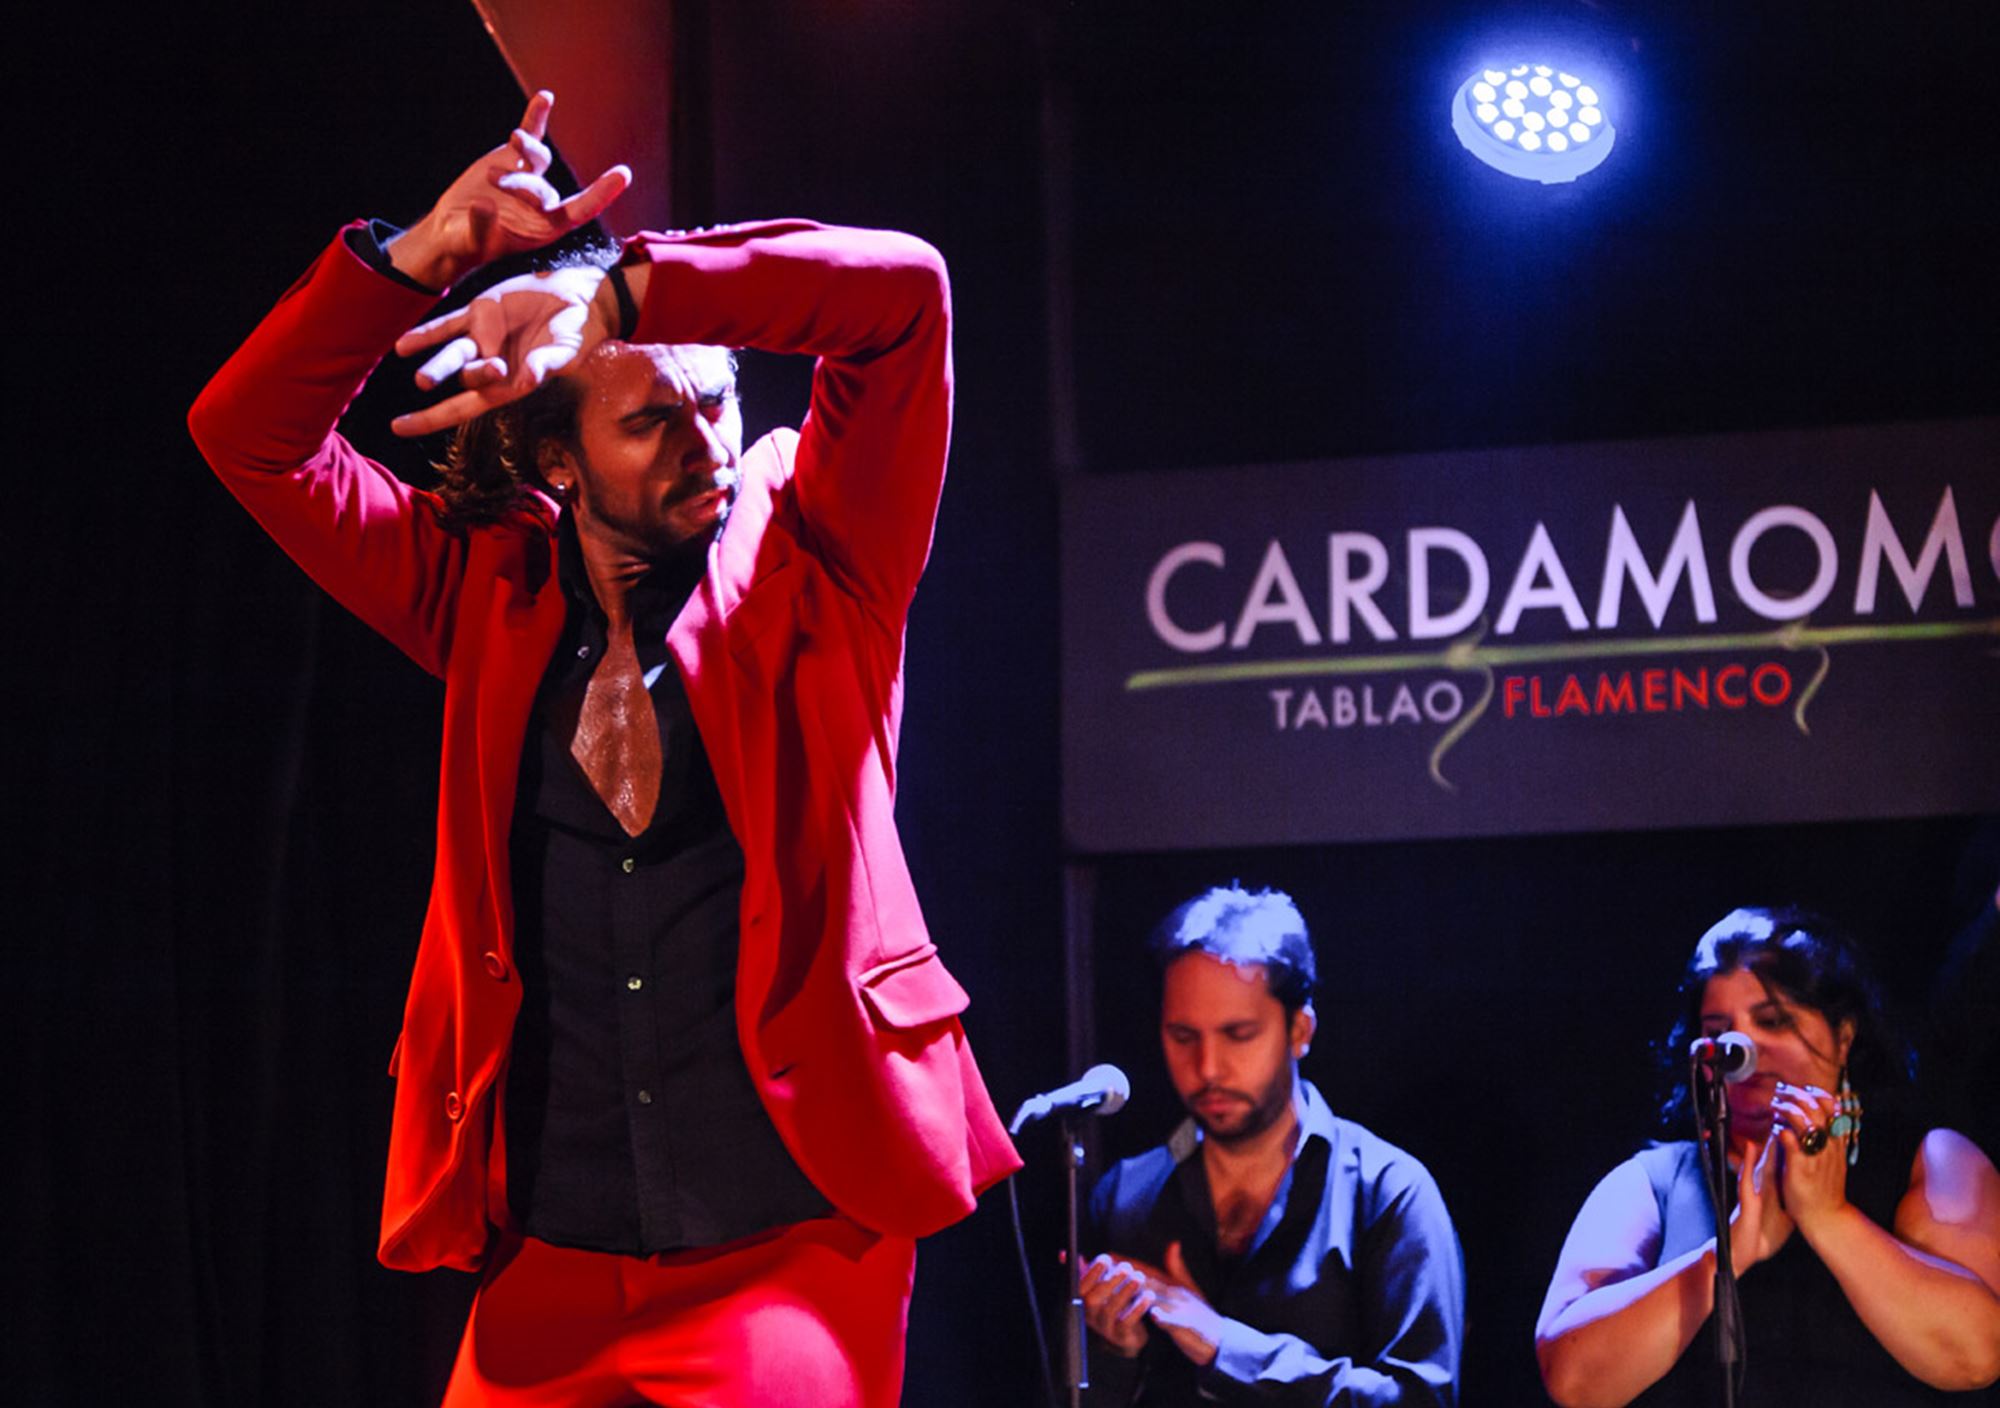 acheter réserver tours Spectacle du flamenco à Cardamomo Tablao billets visiter madrid